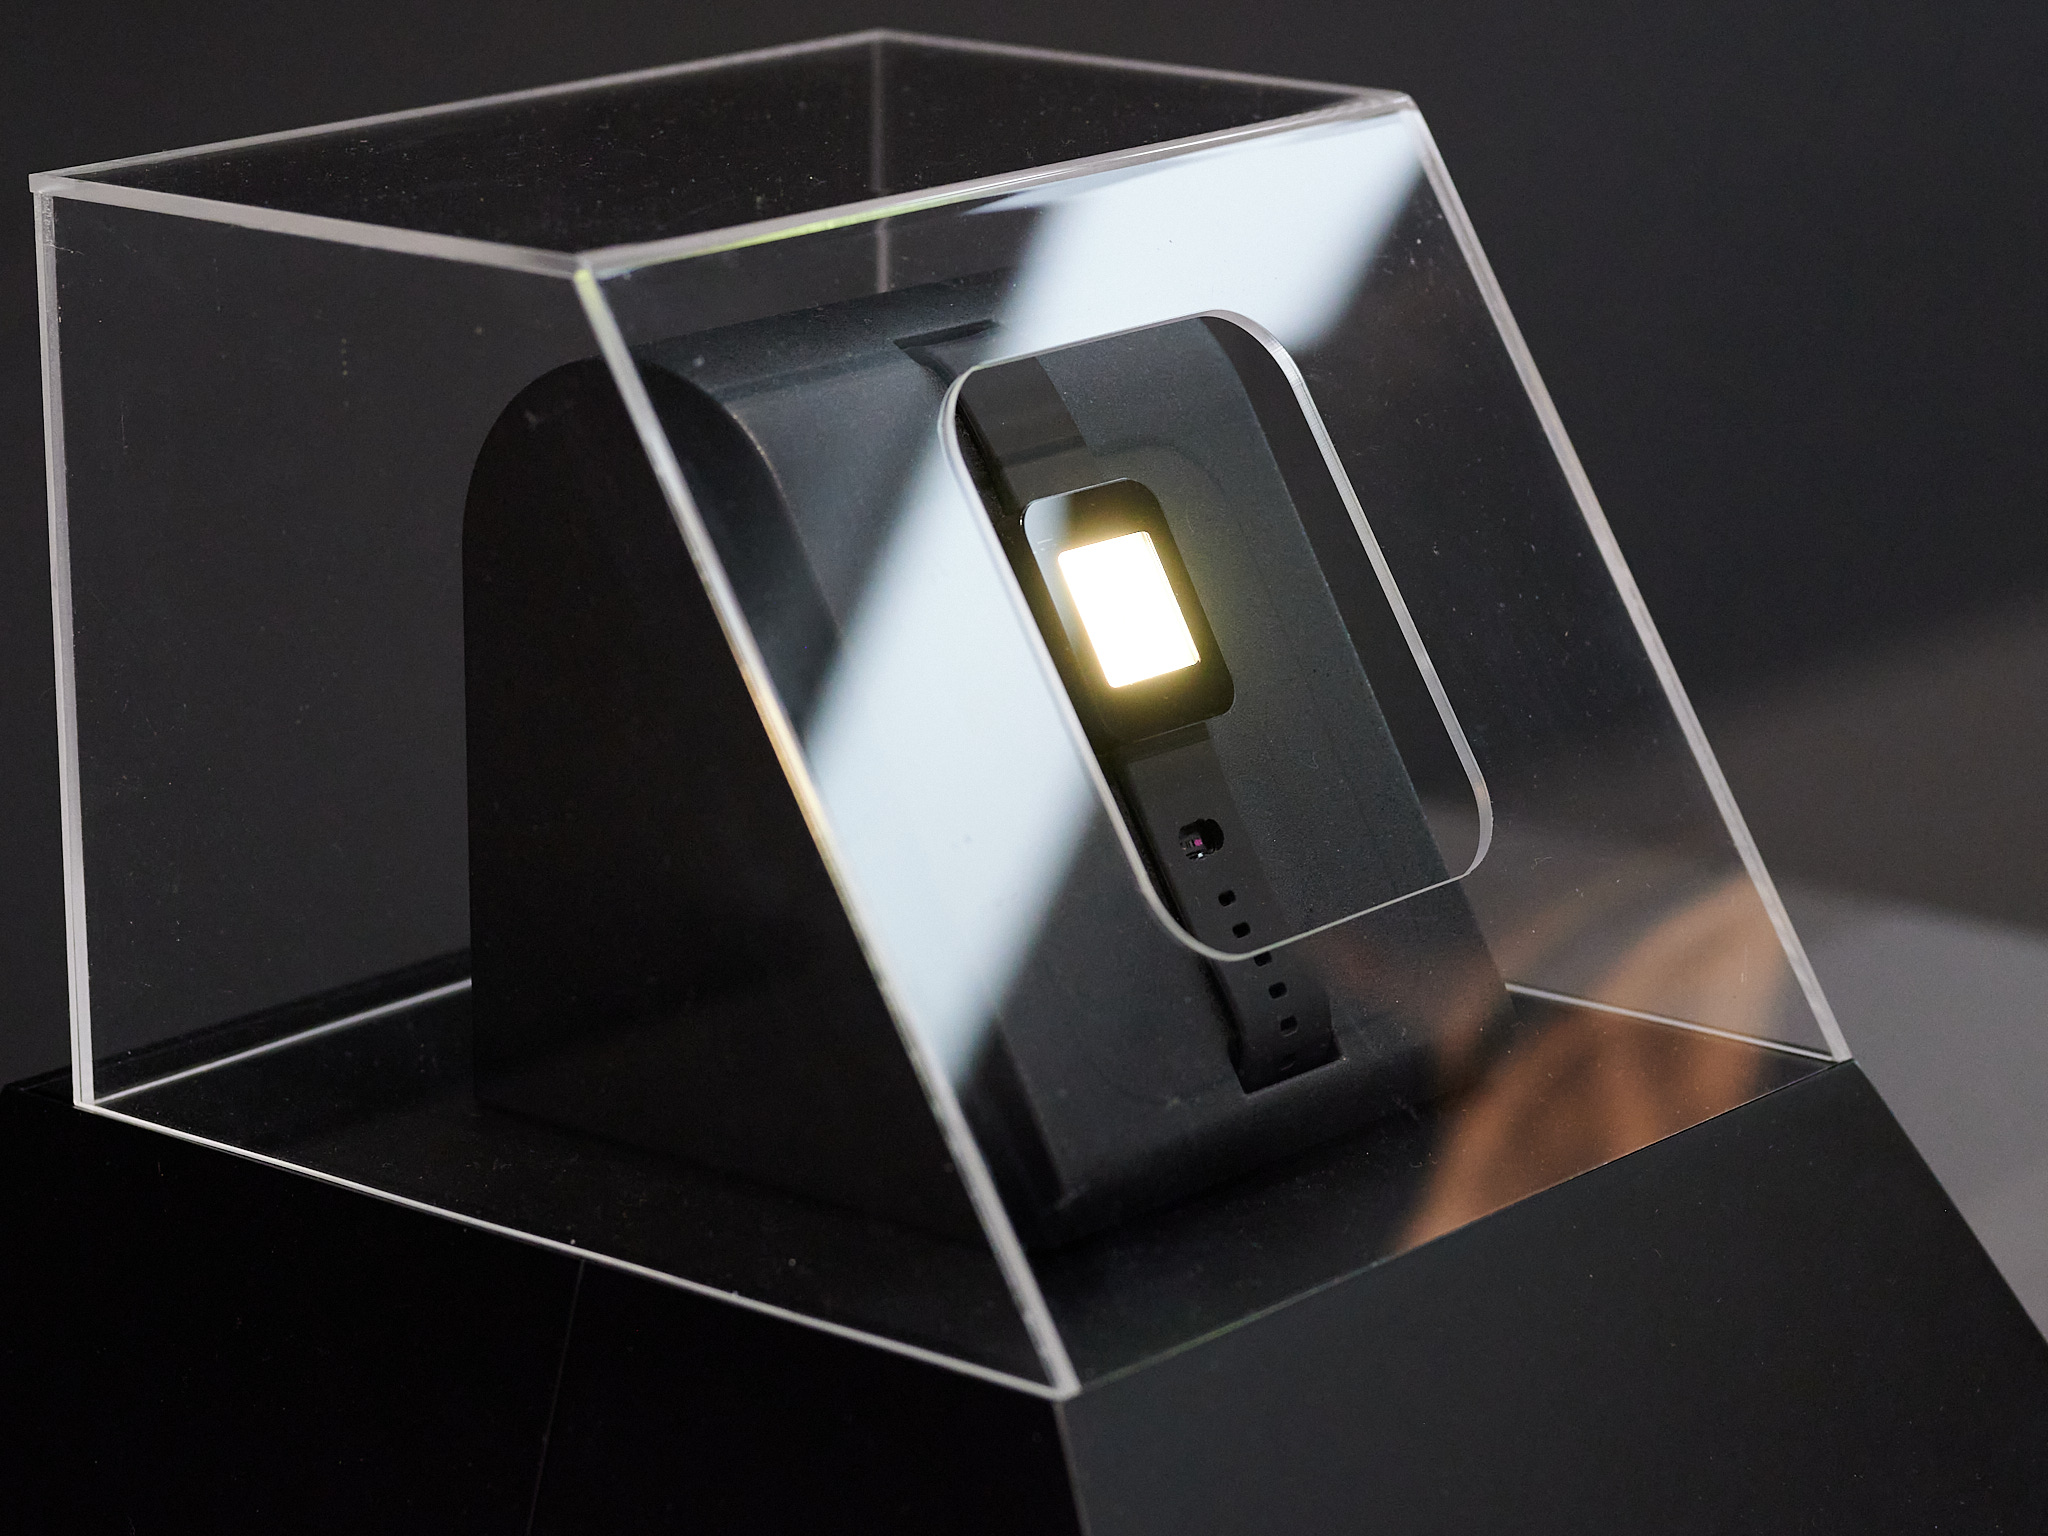 LG Display prezentuje wyświetlacz smartwatcha z renderowaniem 3D przy użyciu technologii pola świetlnego i OLED